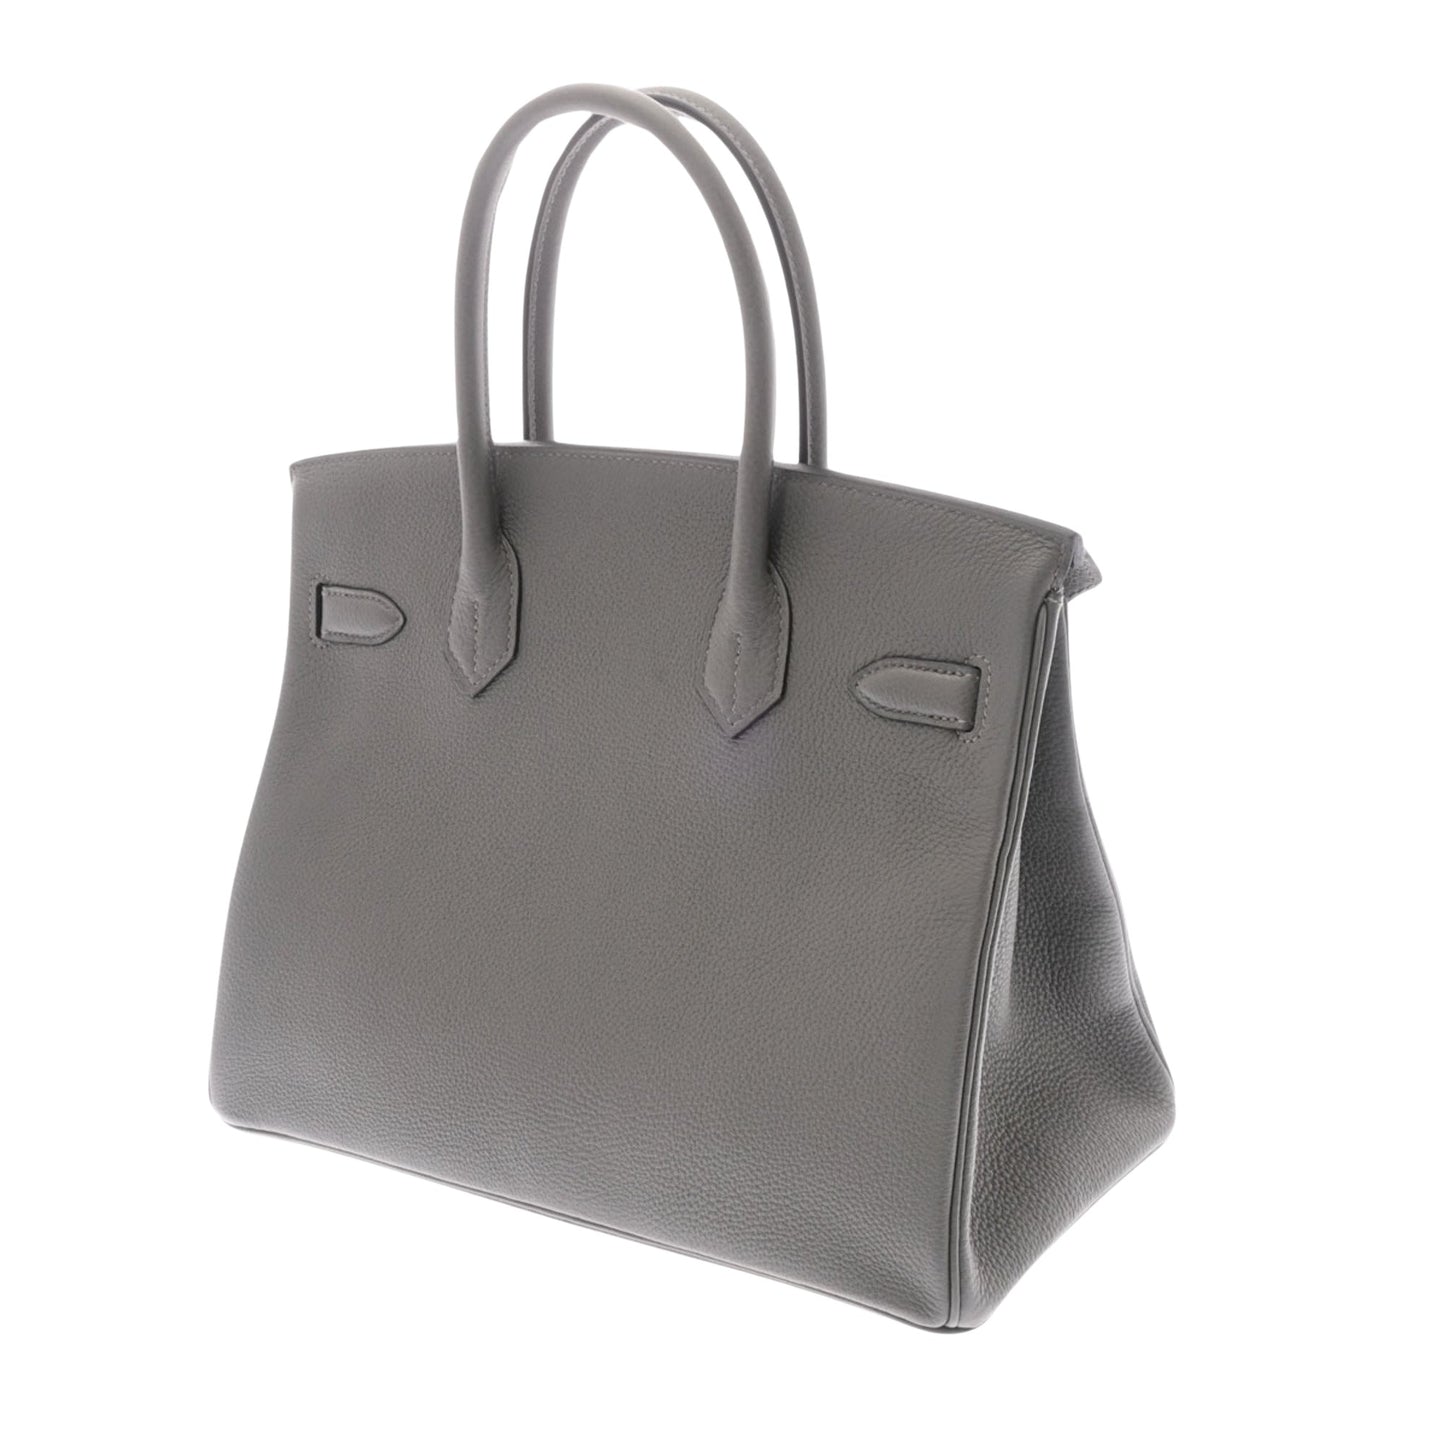 Hermes Women's Hermes Birkin 30 Leather Handbag in Grey